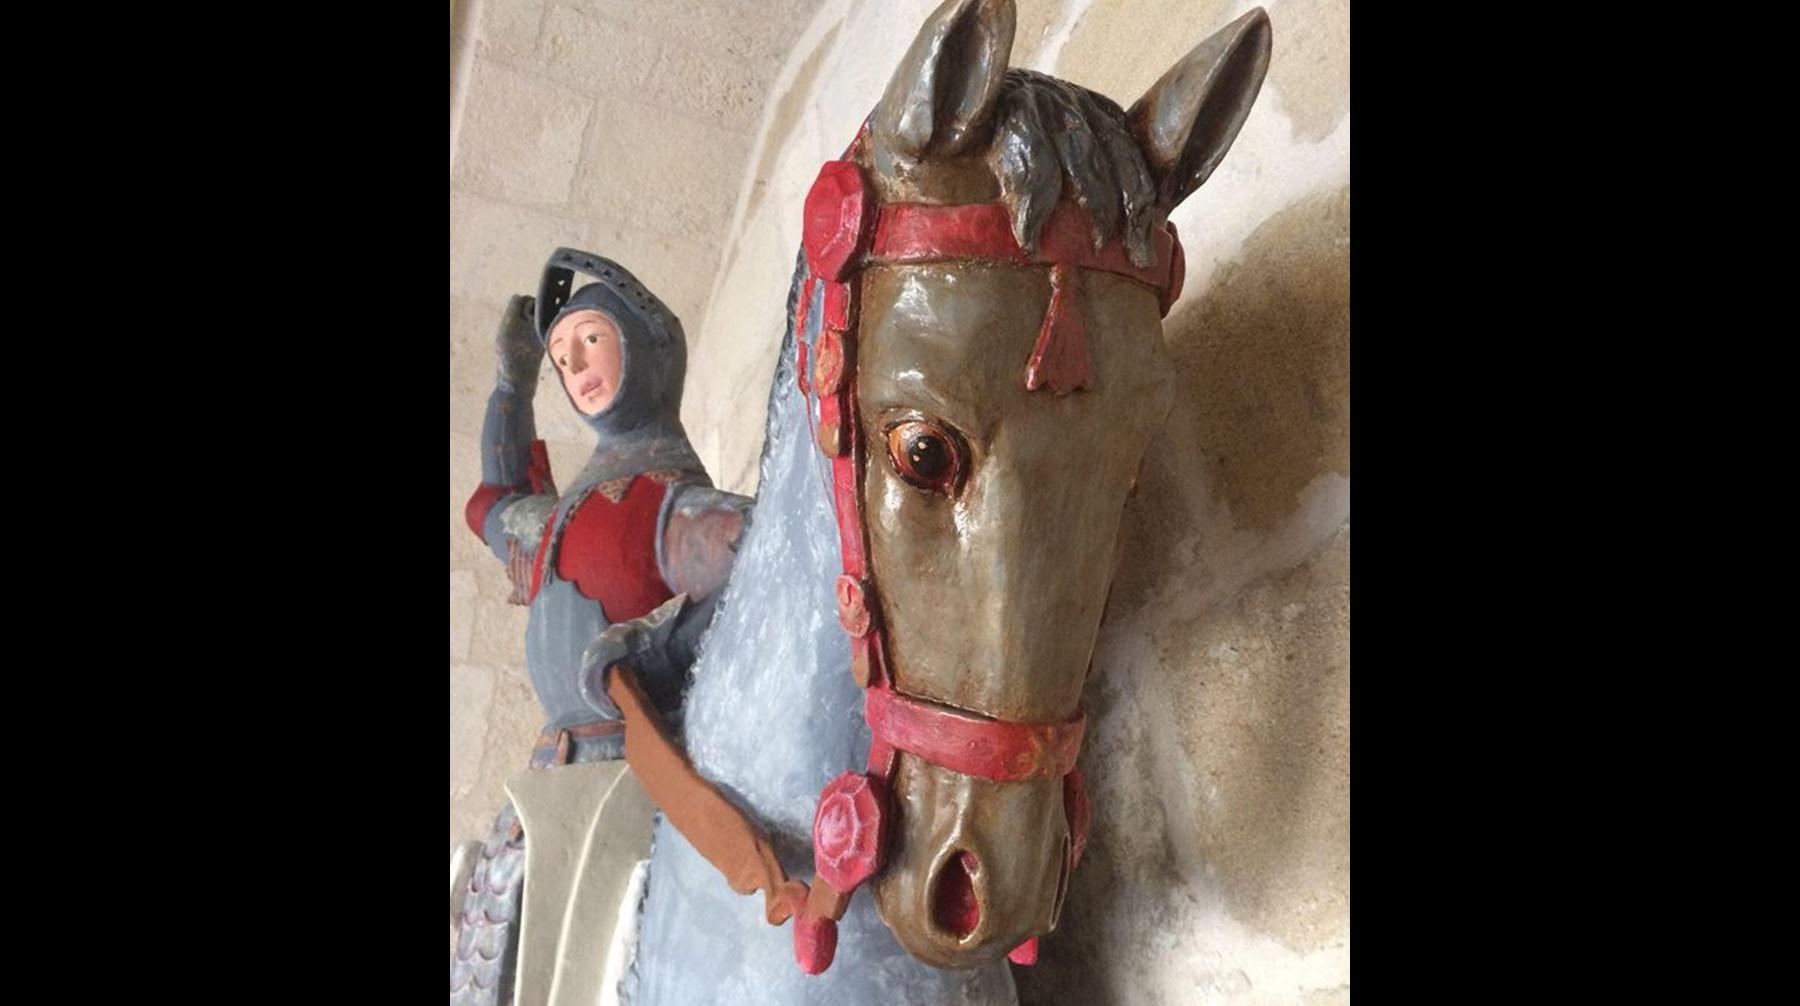 Este tallado de San Jorge es el nuevo "Ecce Homo" por la descuidada restauración a la que fue sometido. (Fotos: Facebook)